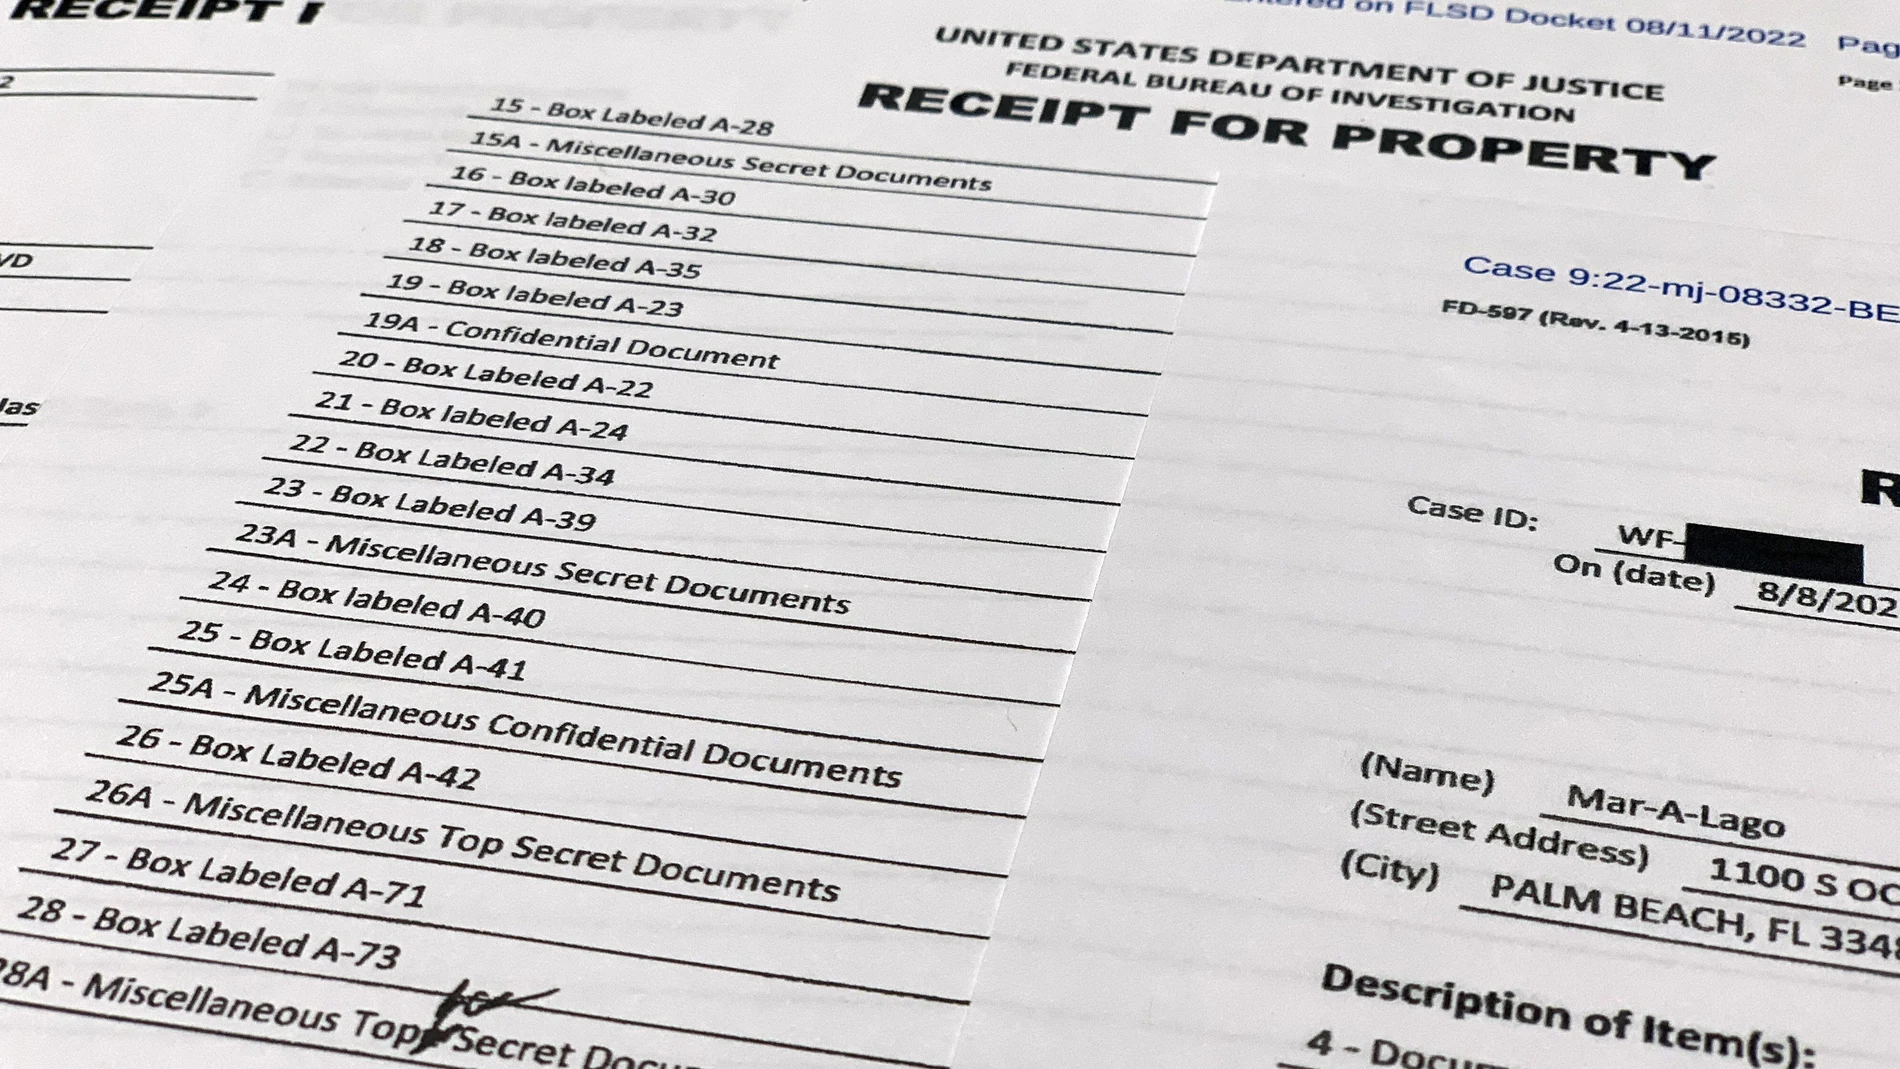 Lista de la documentación incautada pro el FBI en el registro de la residencia del ex presidente Donald Trump